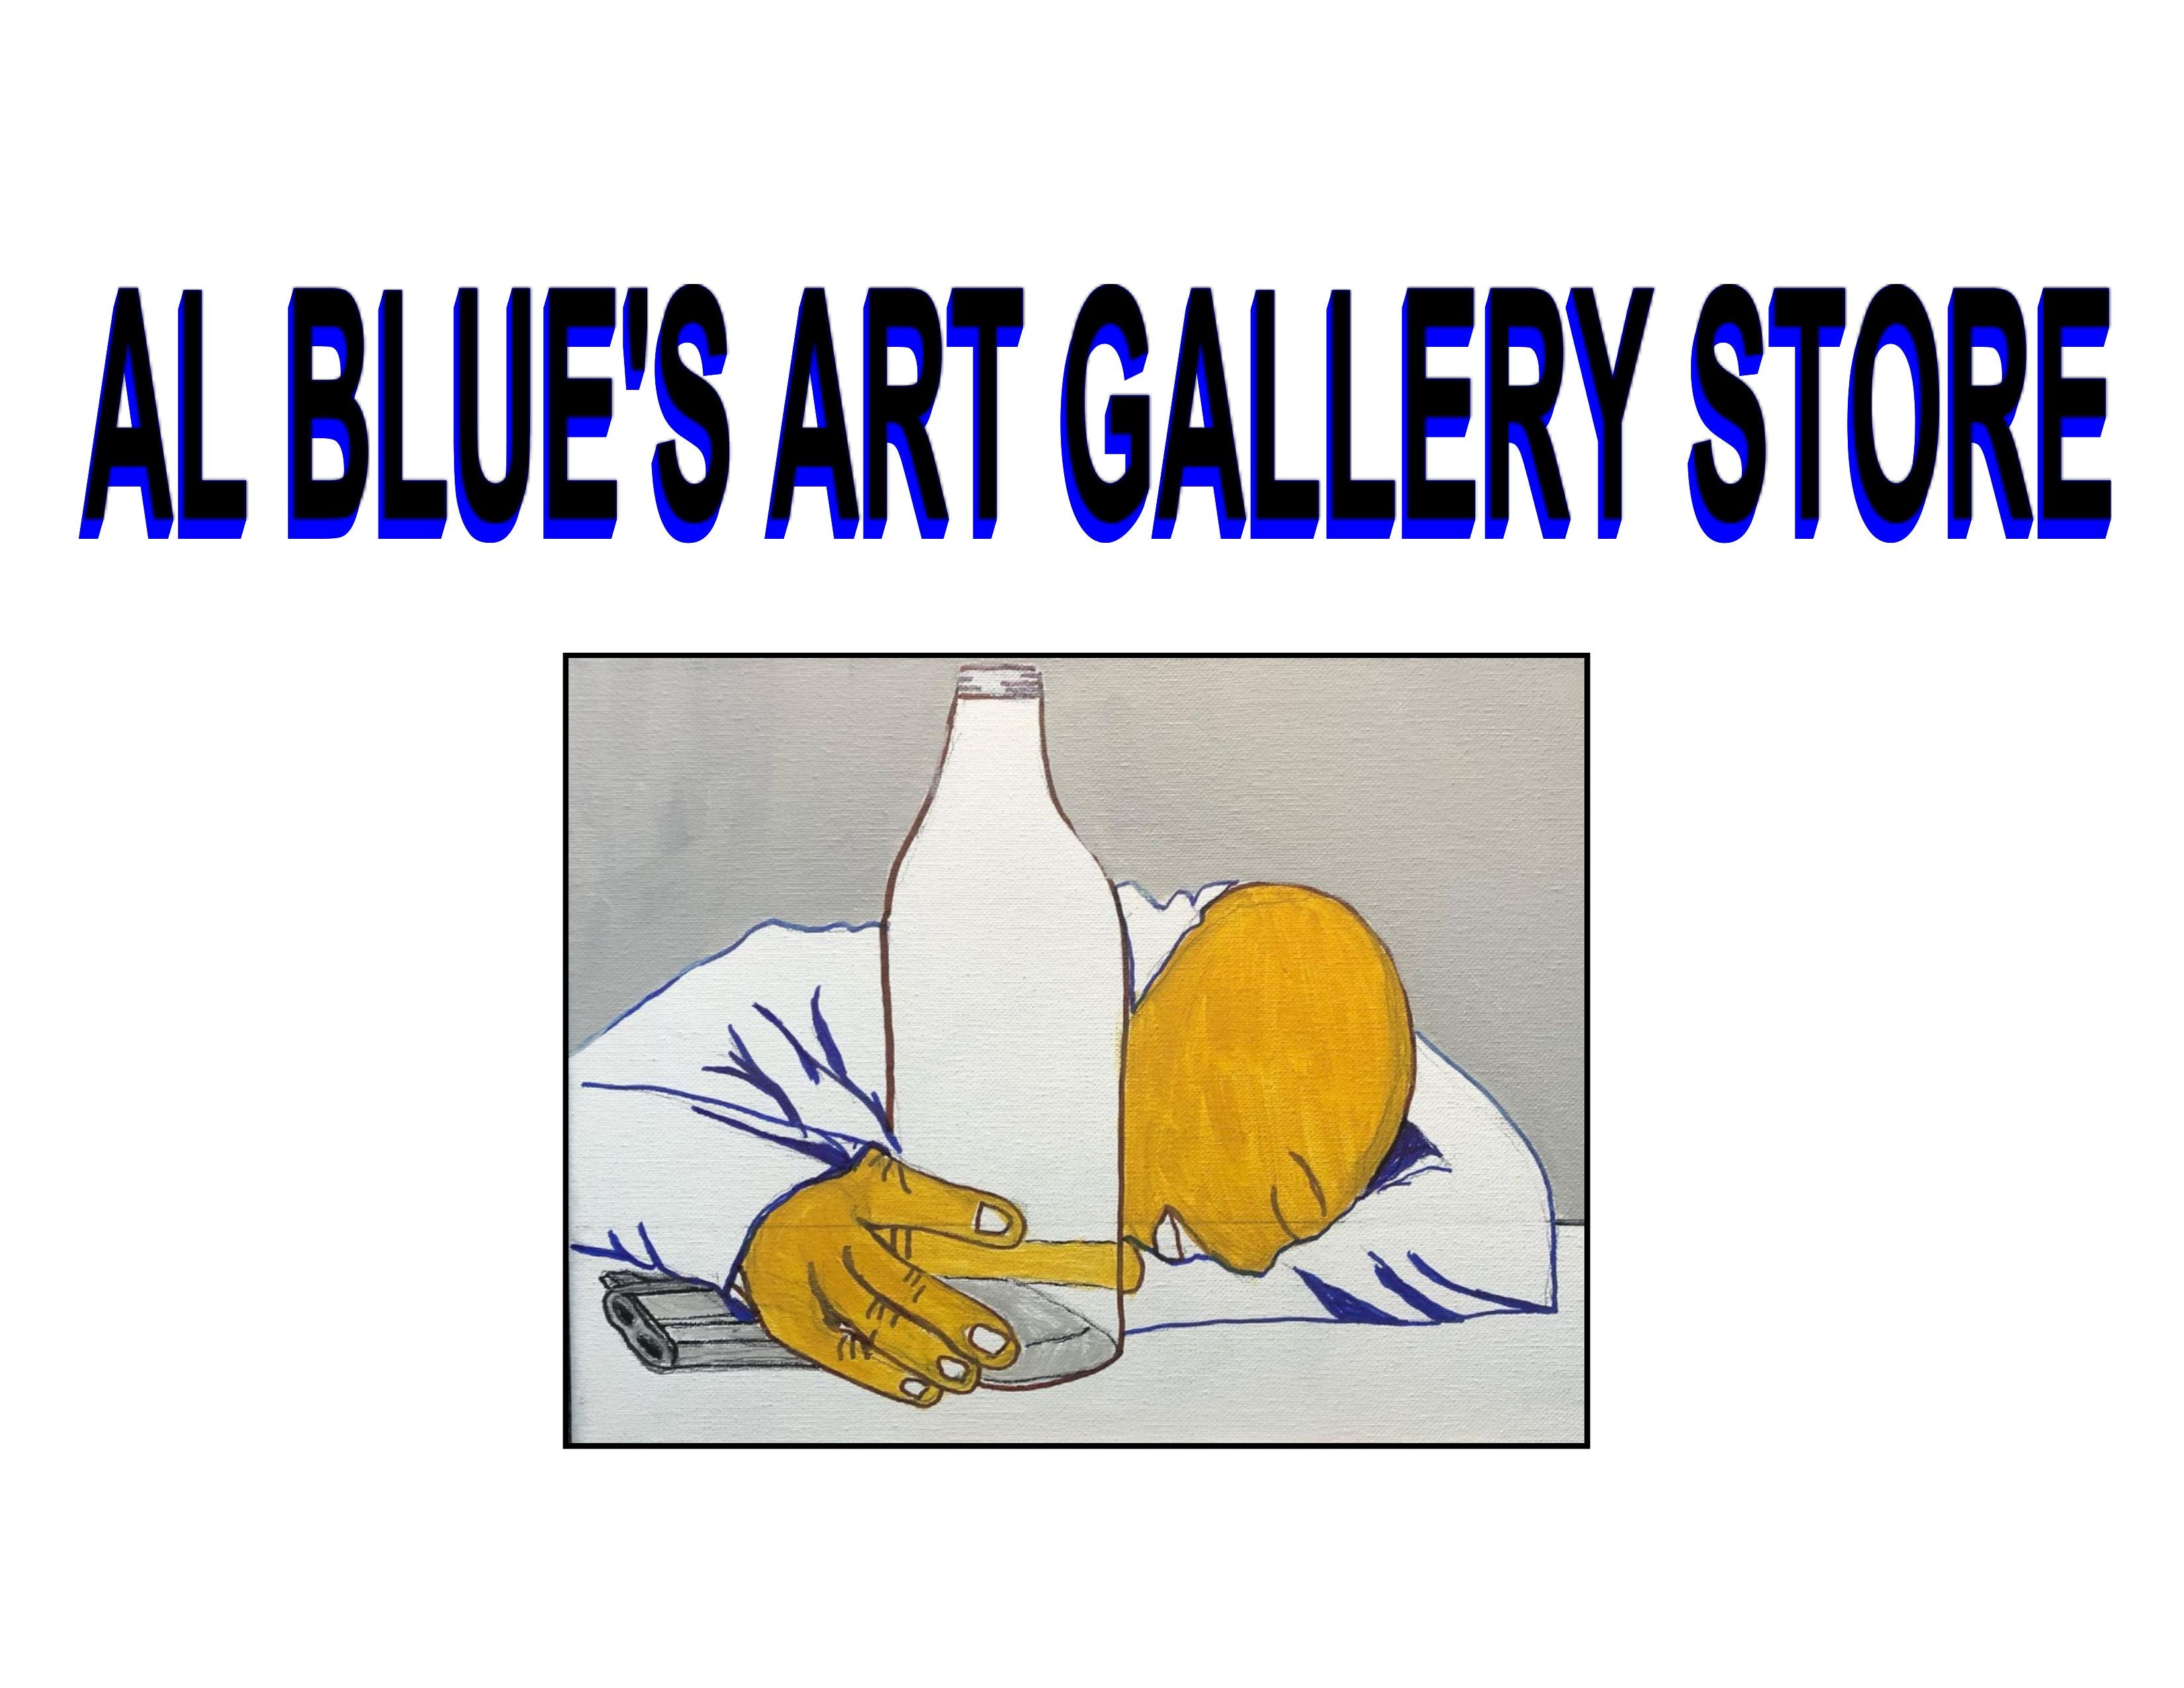 Al Blue Art Gallery Store